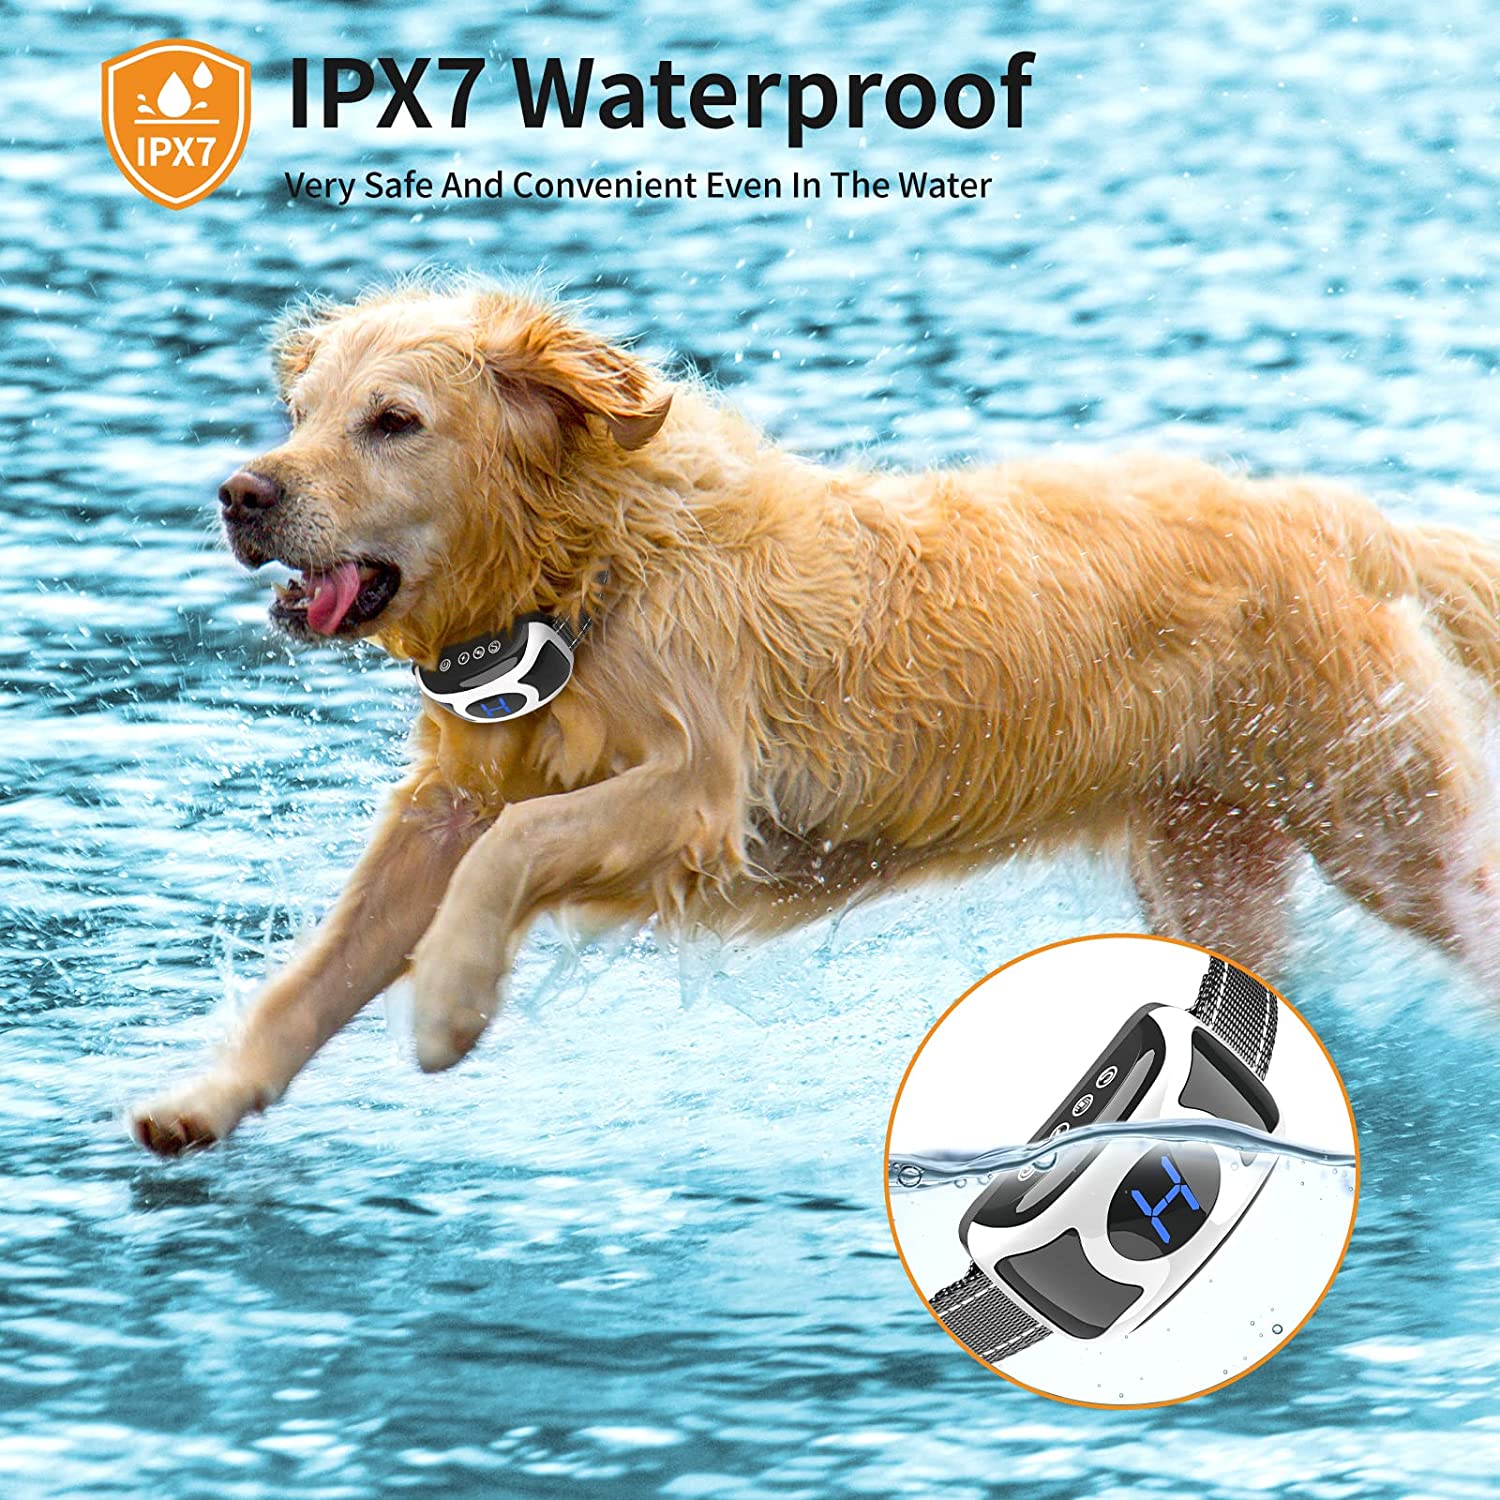     2 ساعت شارژ سریع و قلاده پارس ضد آب قلاده آموزش سگ با باتری لیتیومی داخلی قابل شارژ است